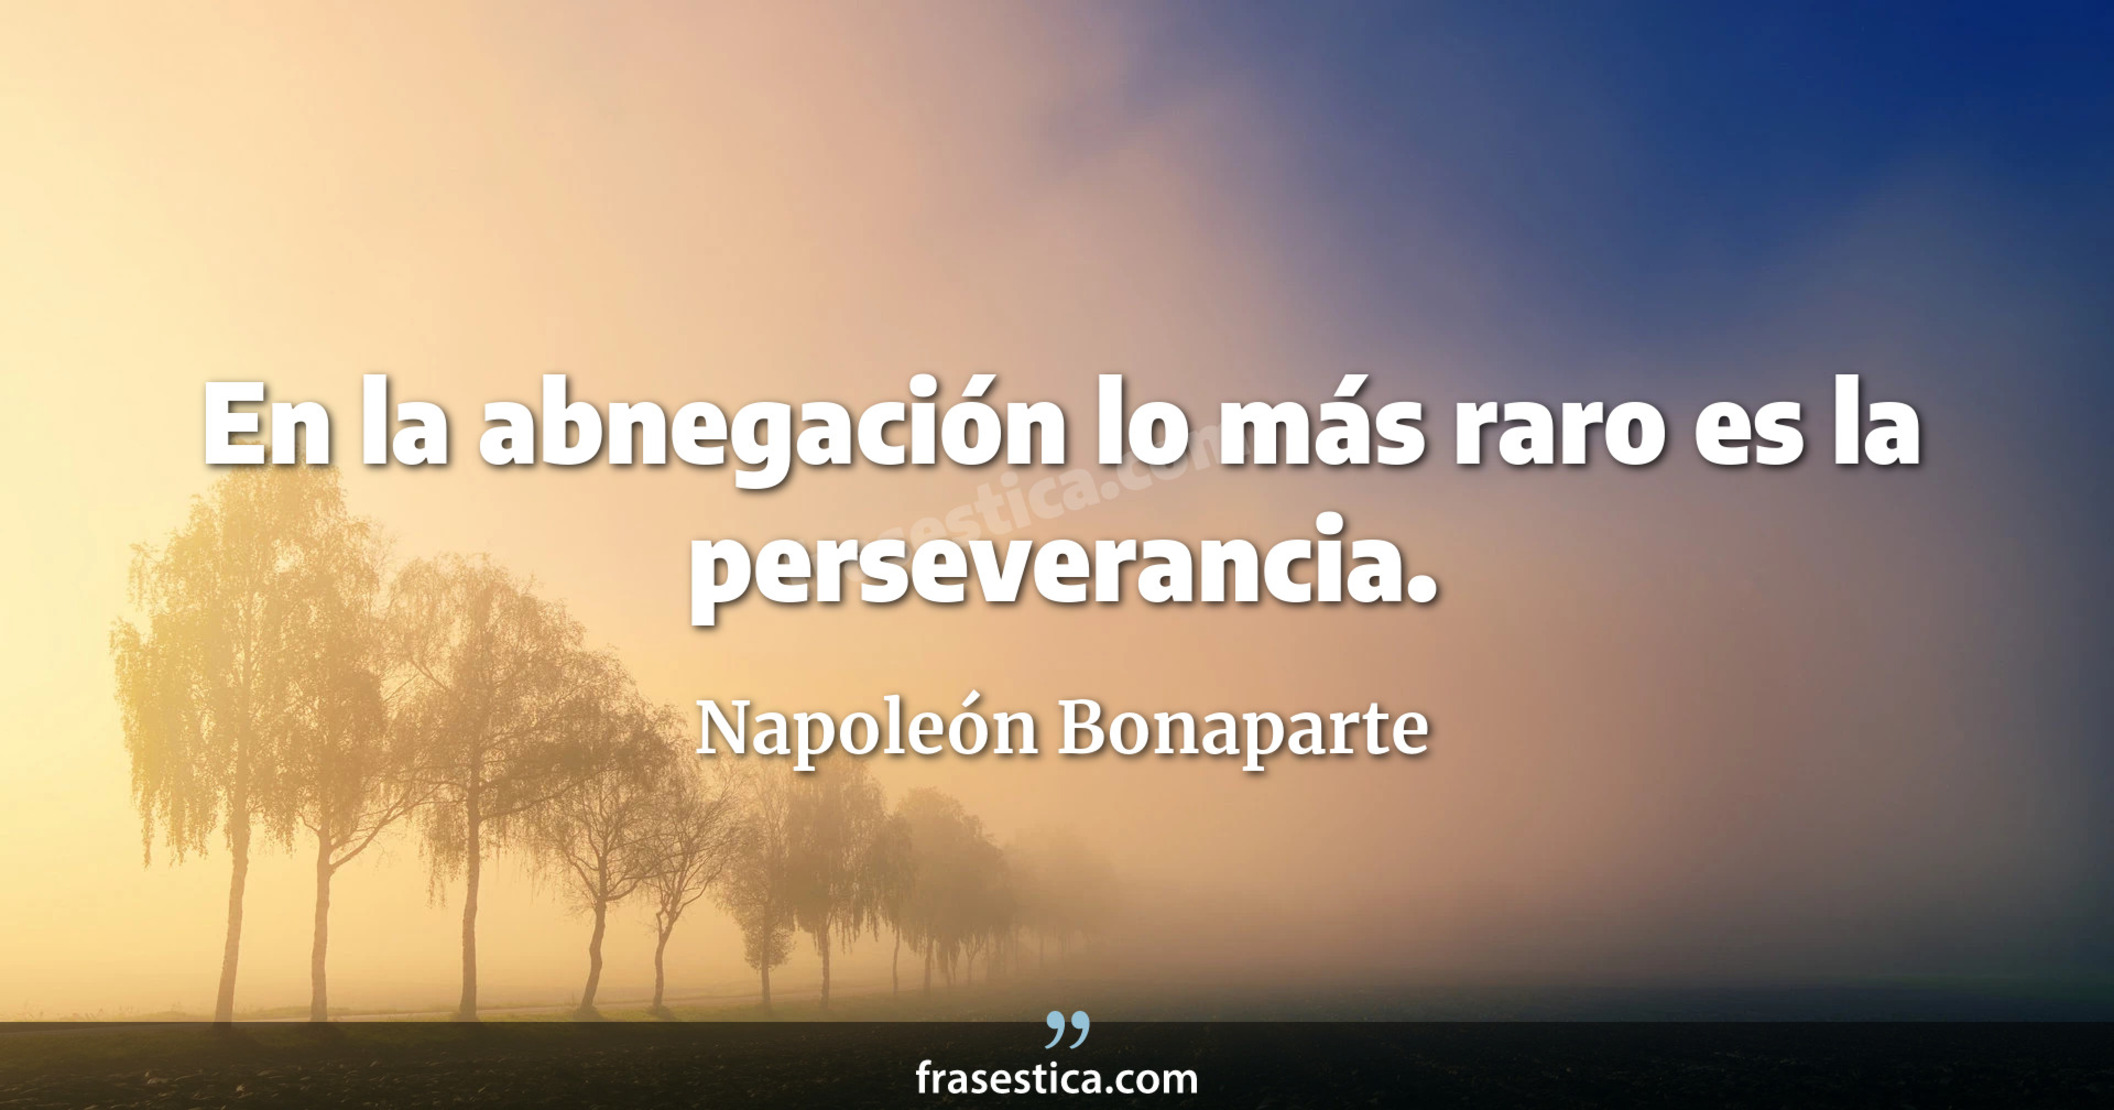 En la abnegación lo más raro es la perseverancia. - Napoleón Bonaparte